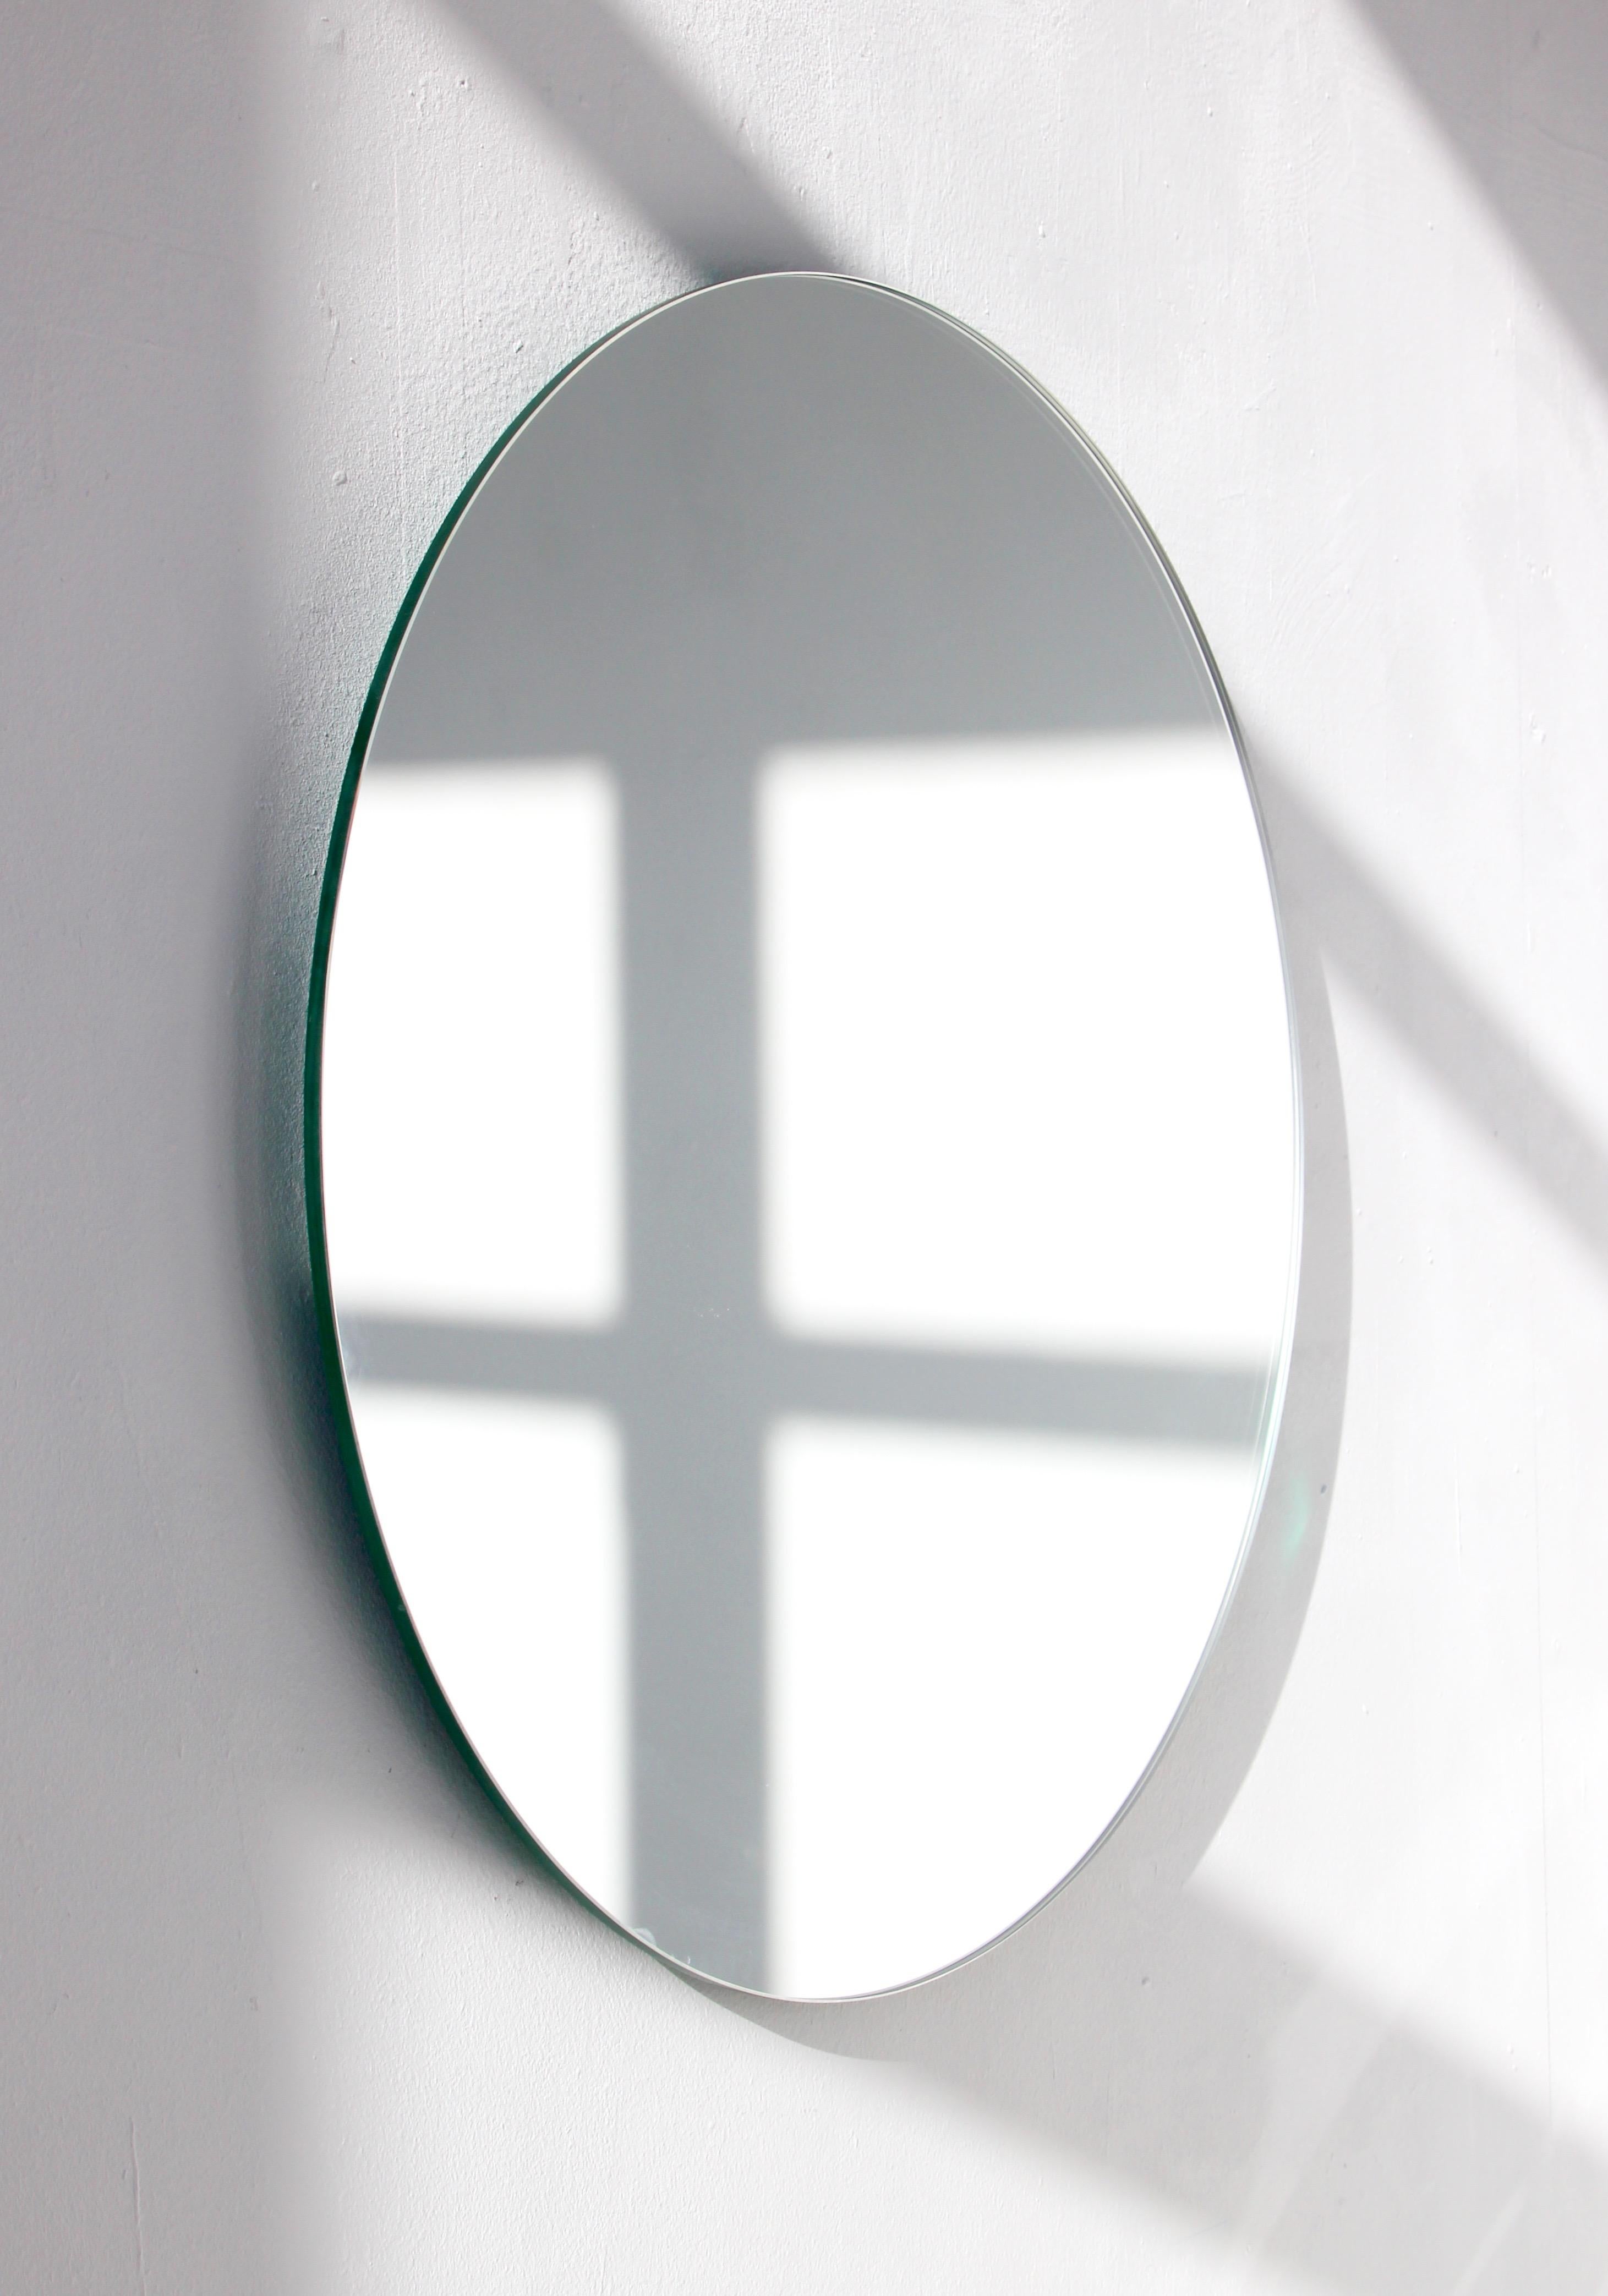 Miroir rond sans cadre, charmant et minimaliste, avec un effet flottant. Un design de qualité qui garantit que le miroir est parfaitement parallèle au mur. Conçu et fabriqué à Londres, au Royaume-Uni.

Equipé de plaques professionnelles non visibles